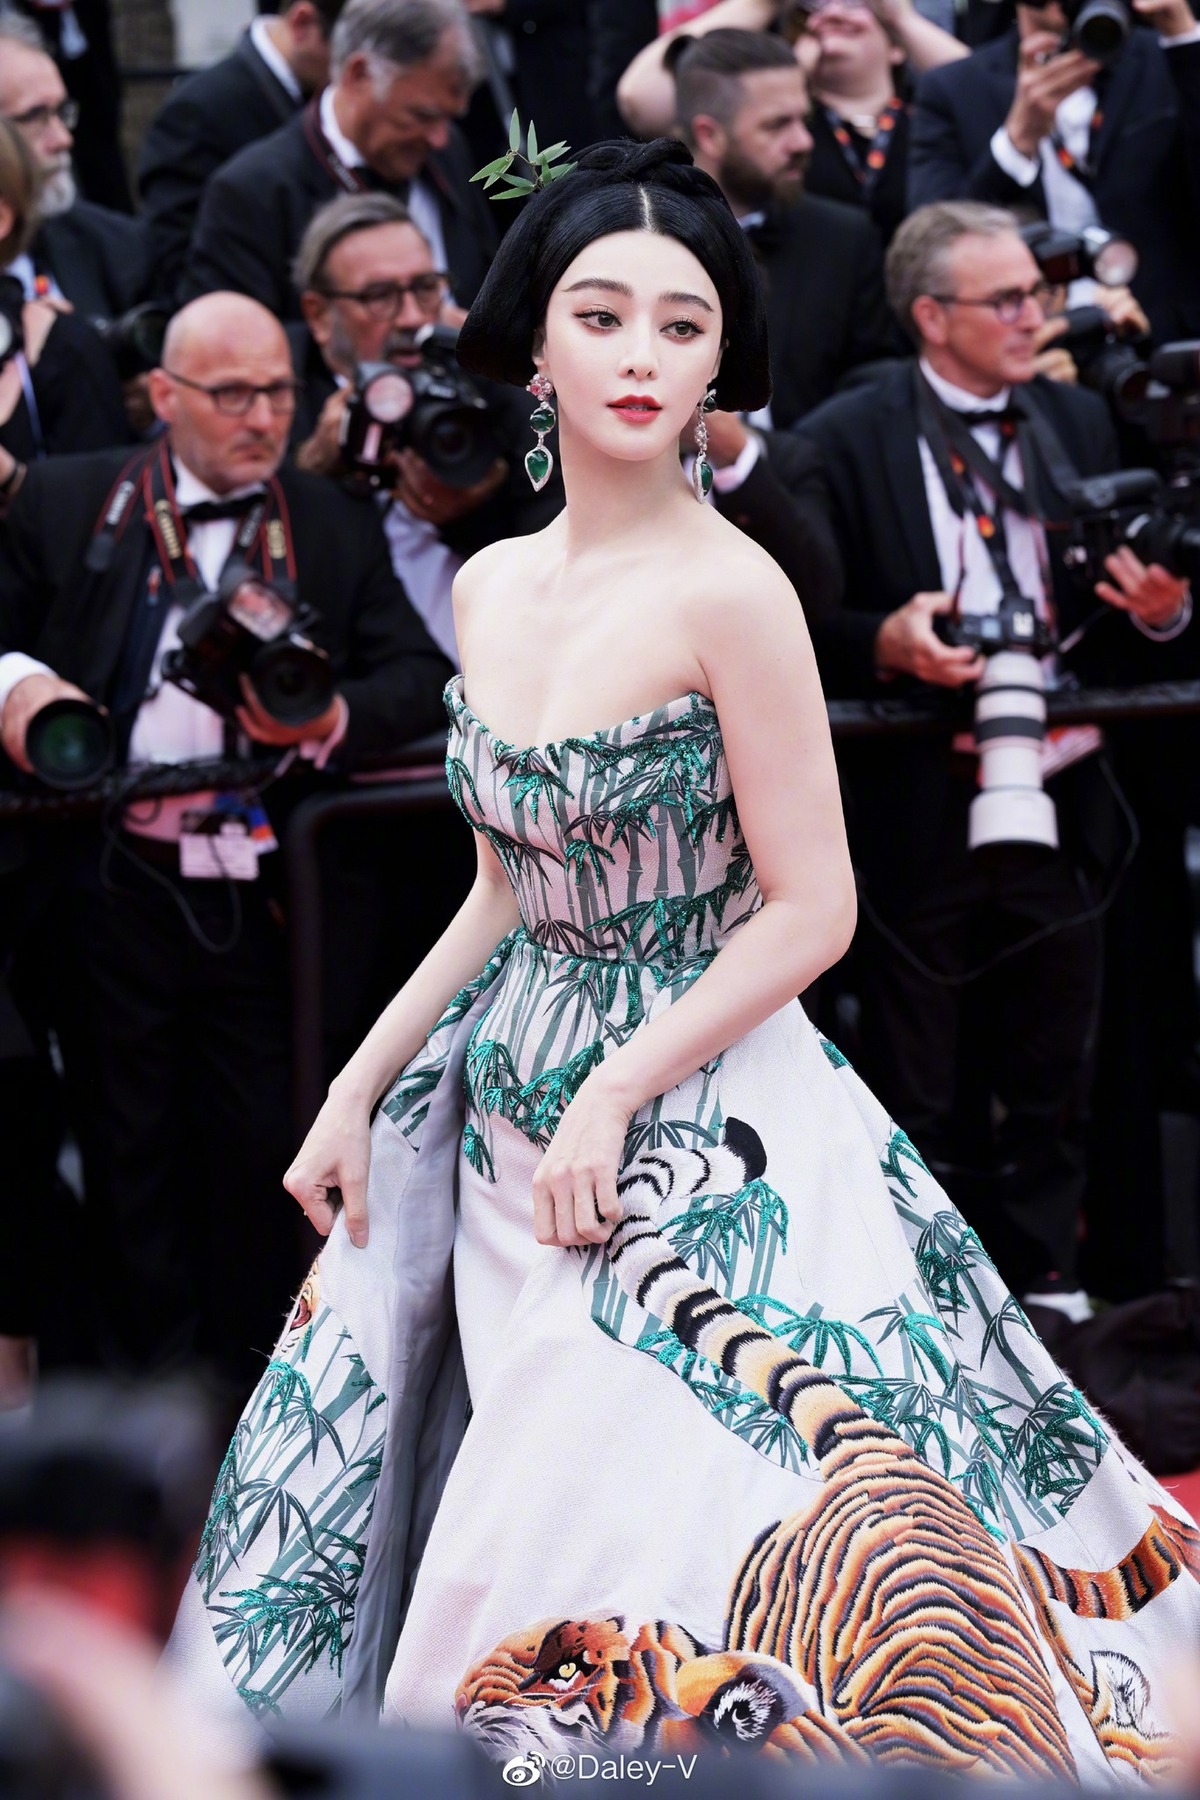 Mỹ nhân xứ Trung Hoa - Phạm Băng Băng được biết đến là một trog những sao nữ có những đặc quyền riêng trên thảm đỏ Cannes. Trong sự kiện Cannes 76, Phạm Băng Băng đã thay đổi liên tục các outfit và luôn là mỹ nữ chiếm 'spotlight' tại sự kiện này.